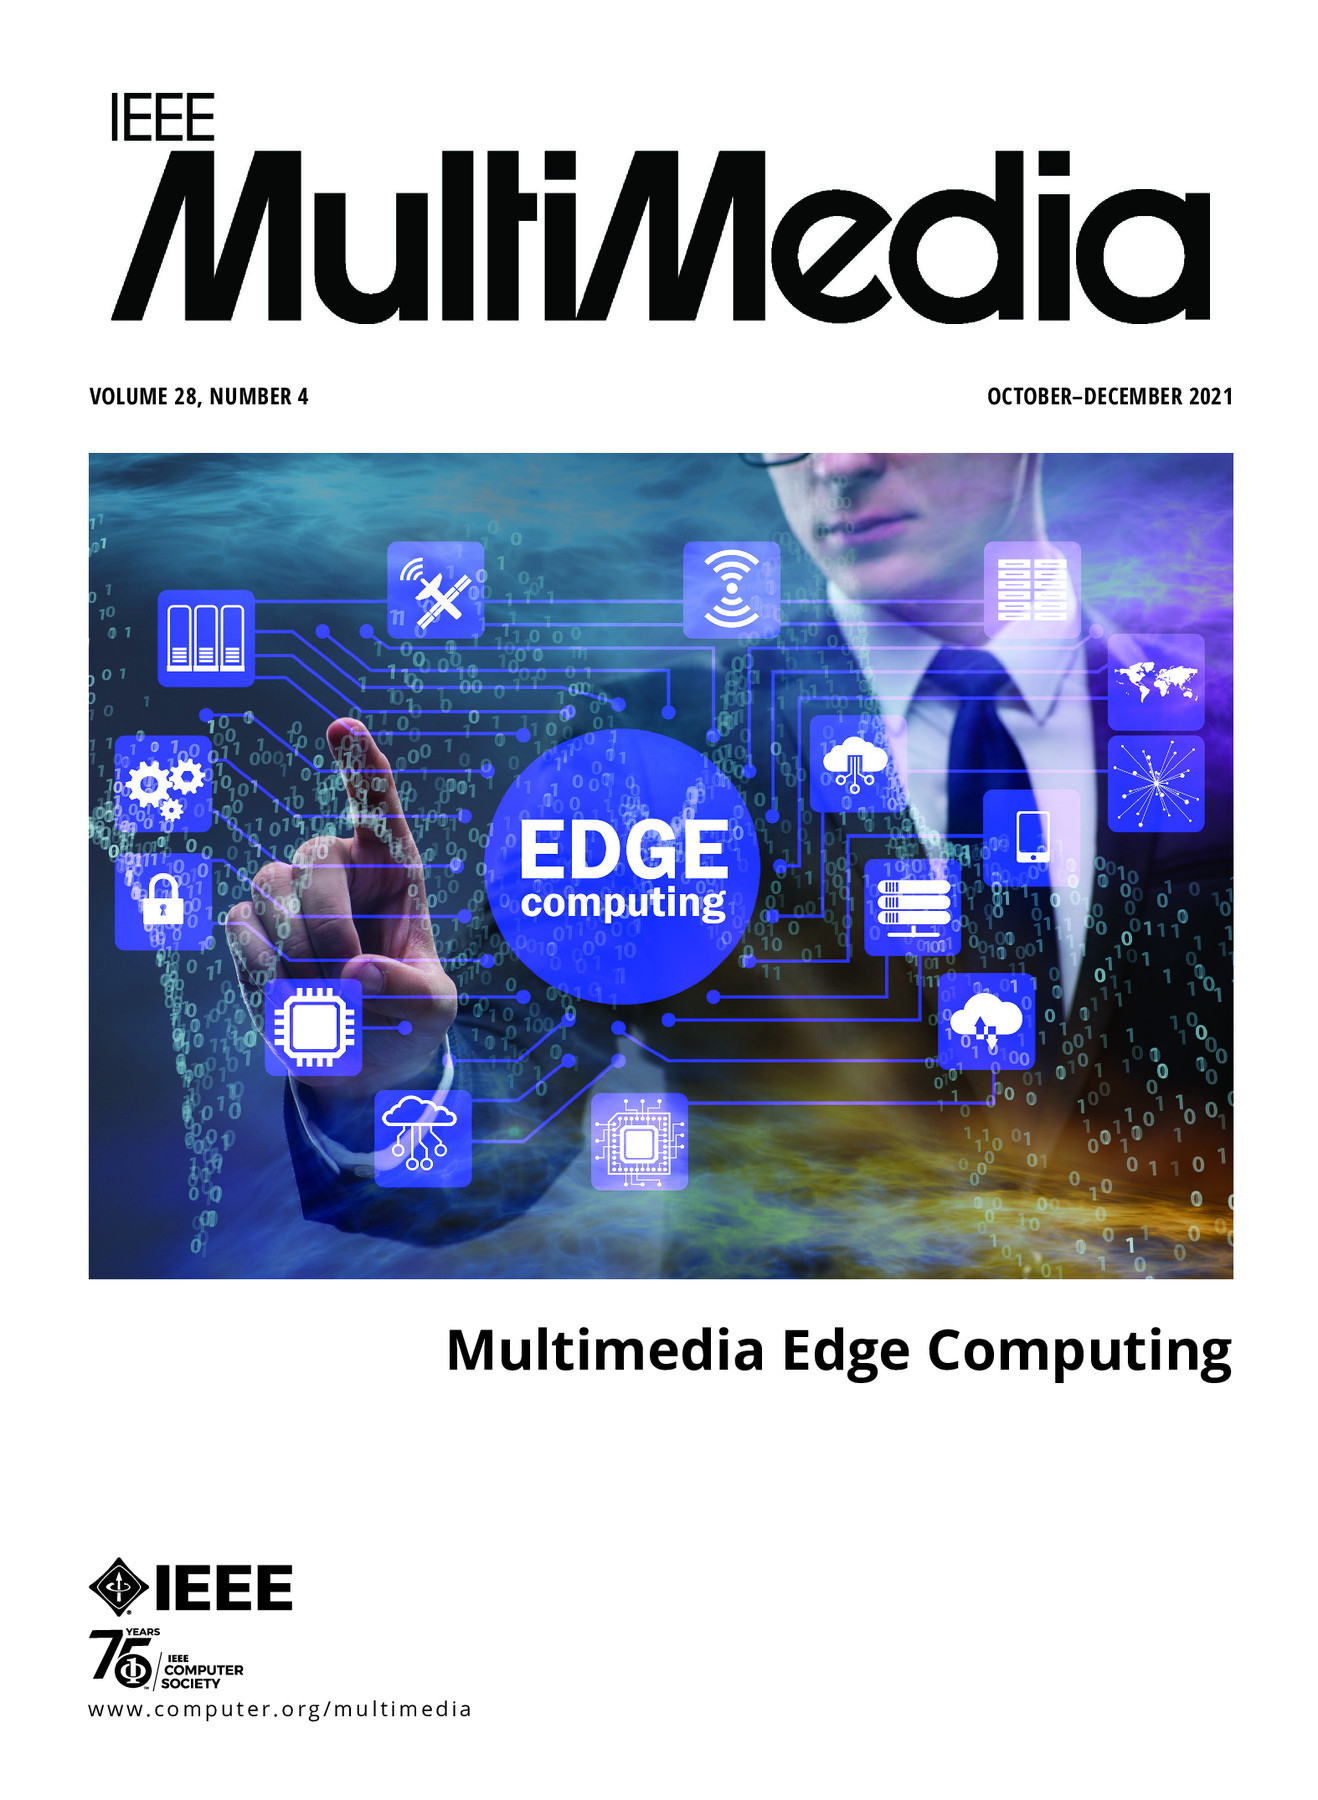 IEEE Multimedia October/November/December 2021 Vol. 28 No. 4